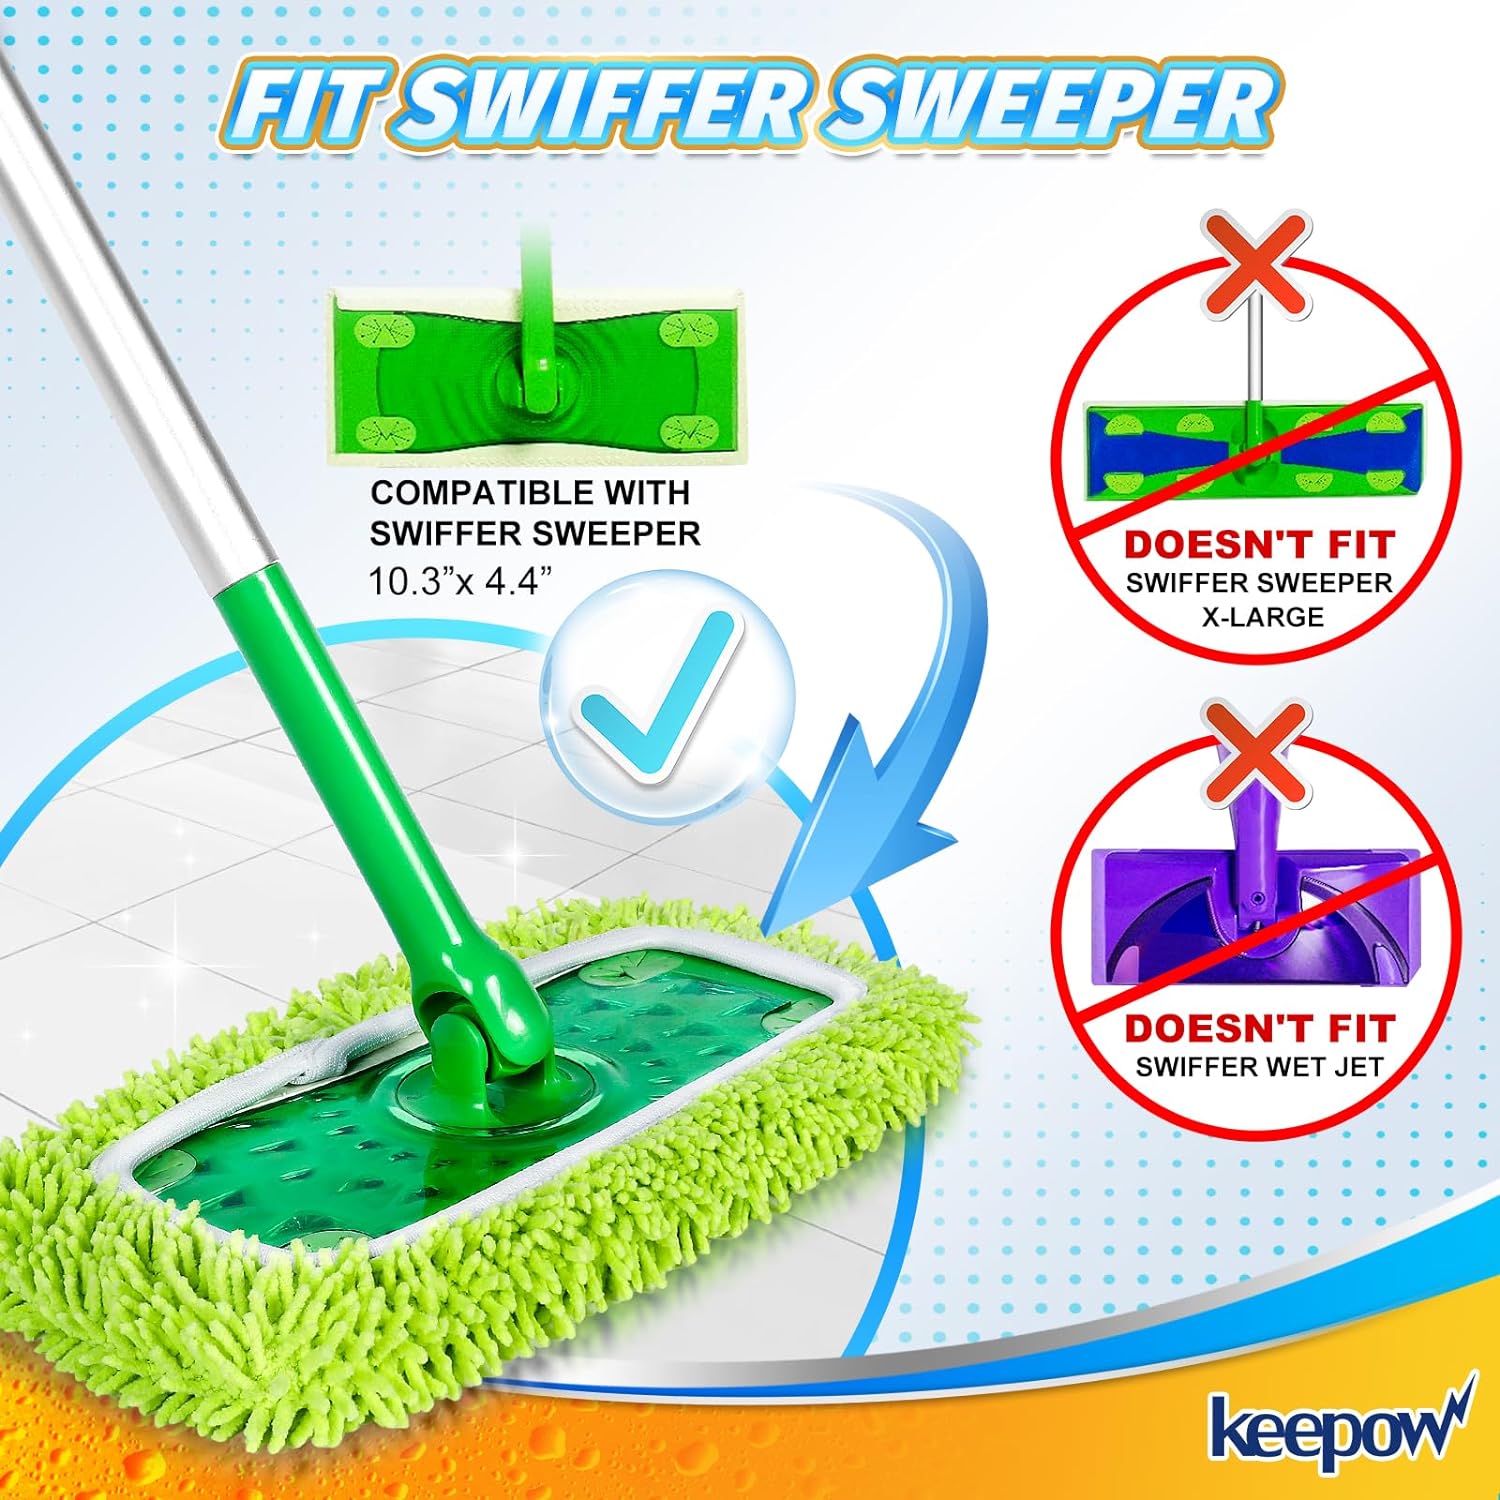 KEEPOW 5701M Panni riutilizzabili per mop, panni per pavimenti asciutti per Swiffer Sweeper Mop 3+3 pezzi（bianco + verde）